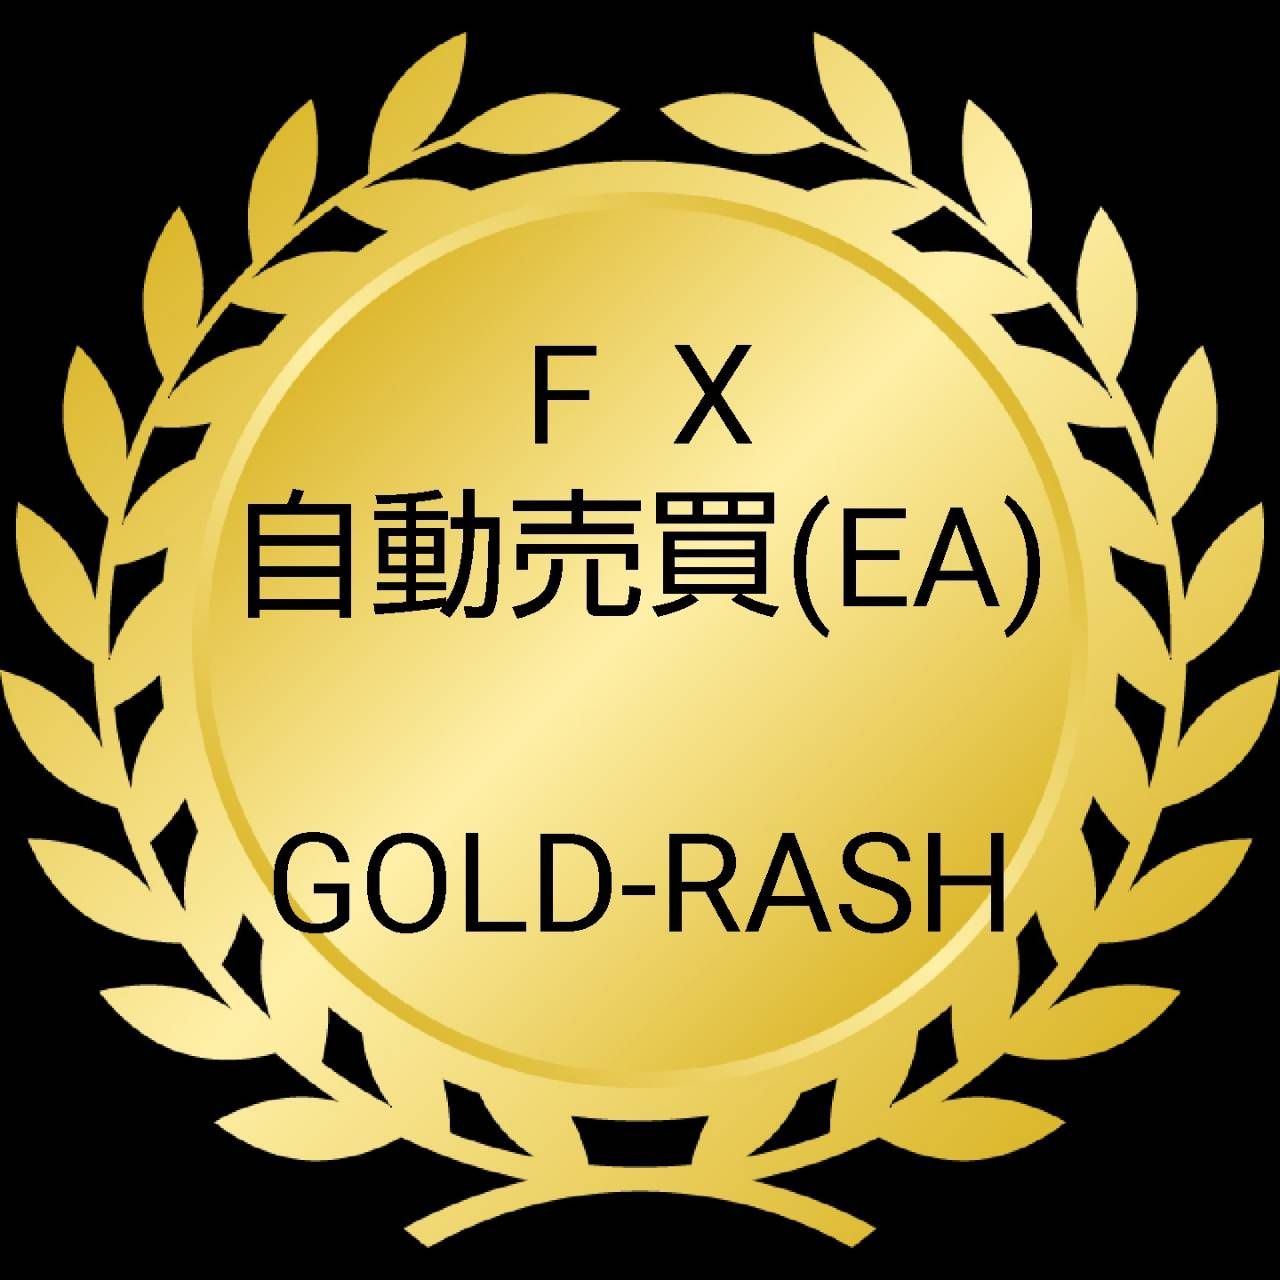 GOLD-RASH Tự động giao dịch